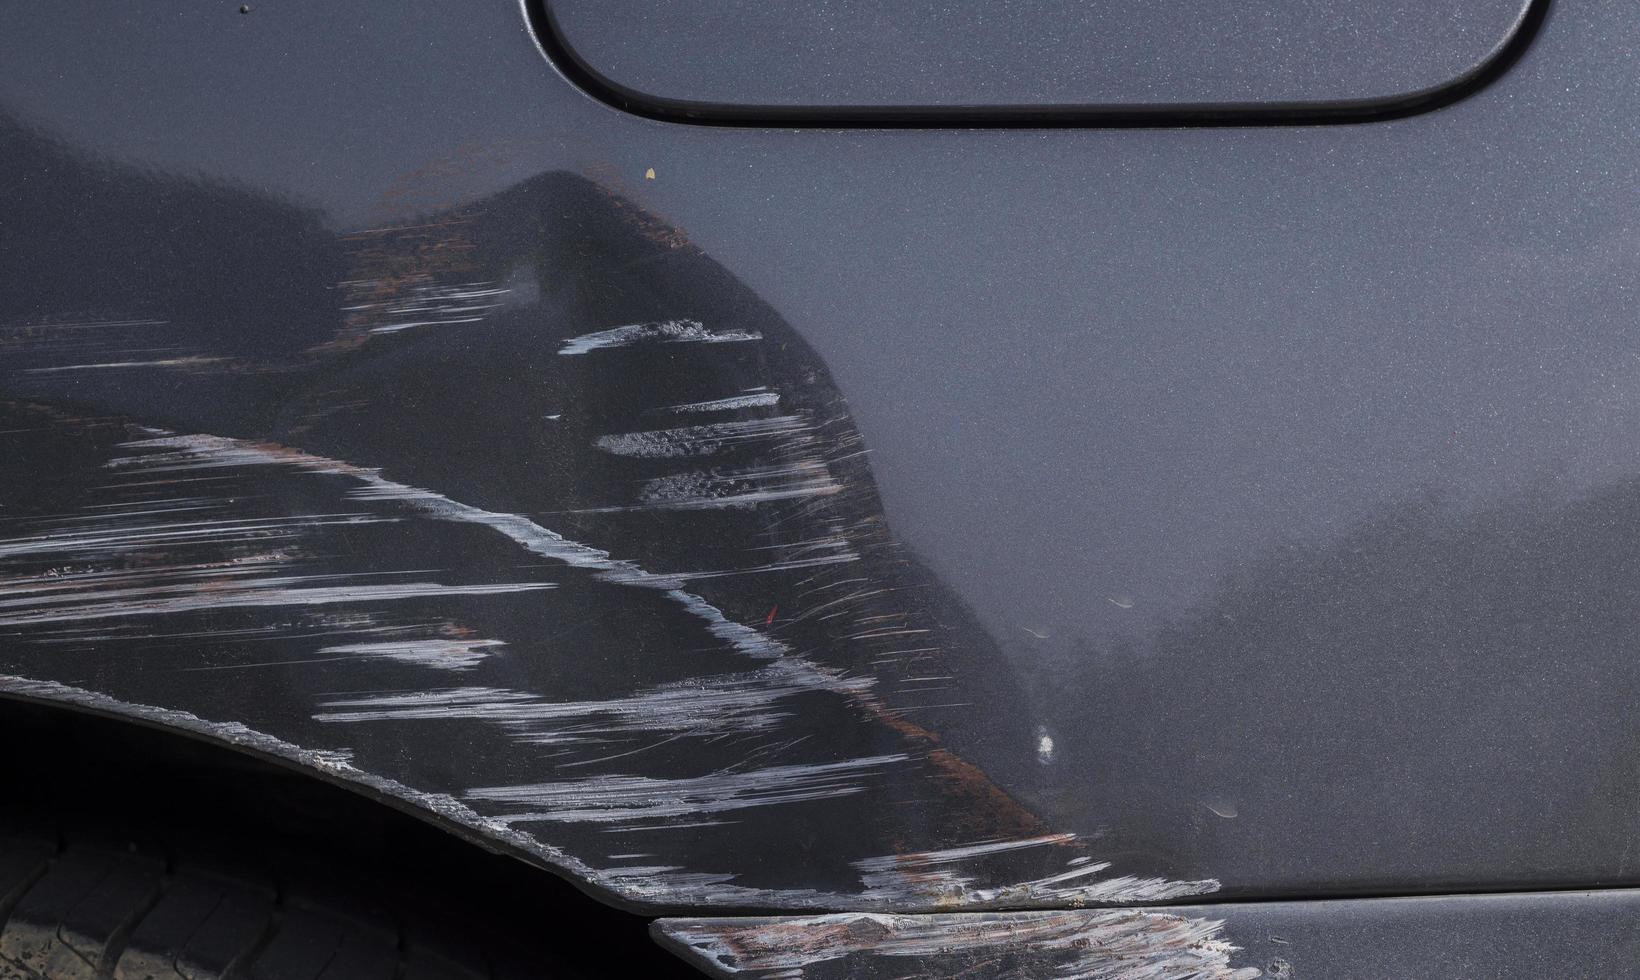 Kratzer auf der Karosserie eines grauen Autos durch einen Autounfall foto